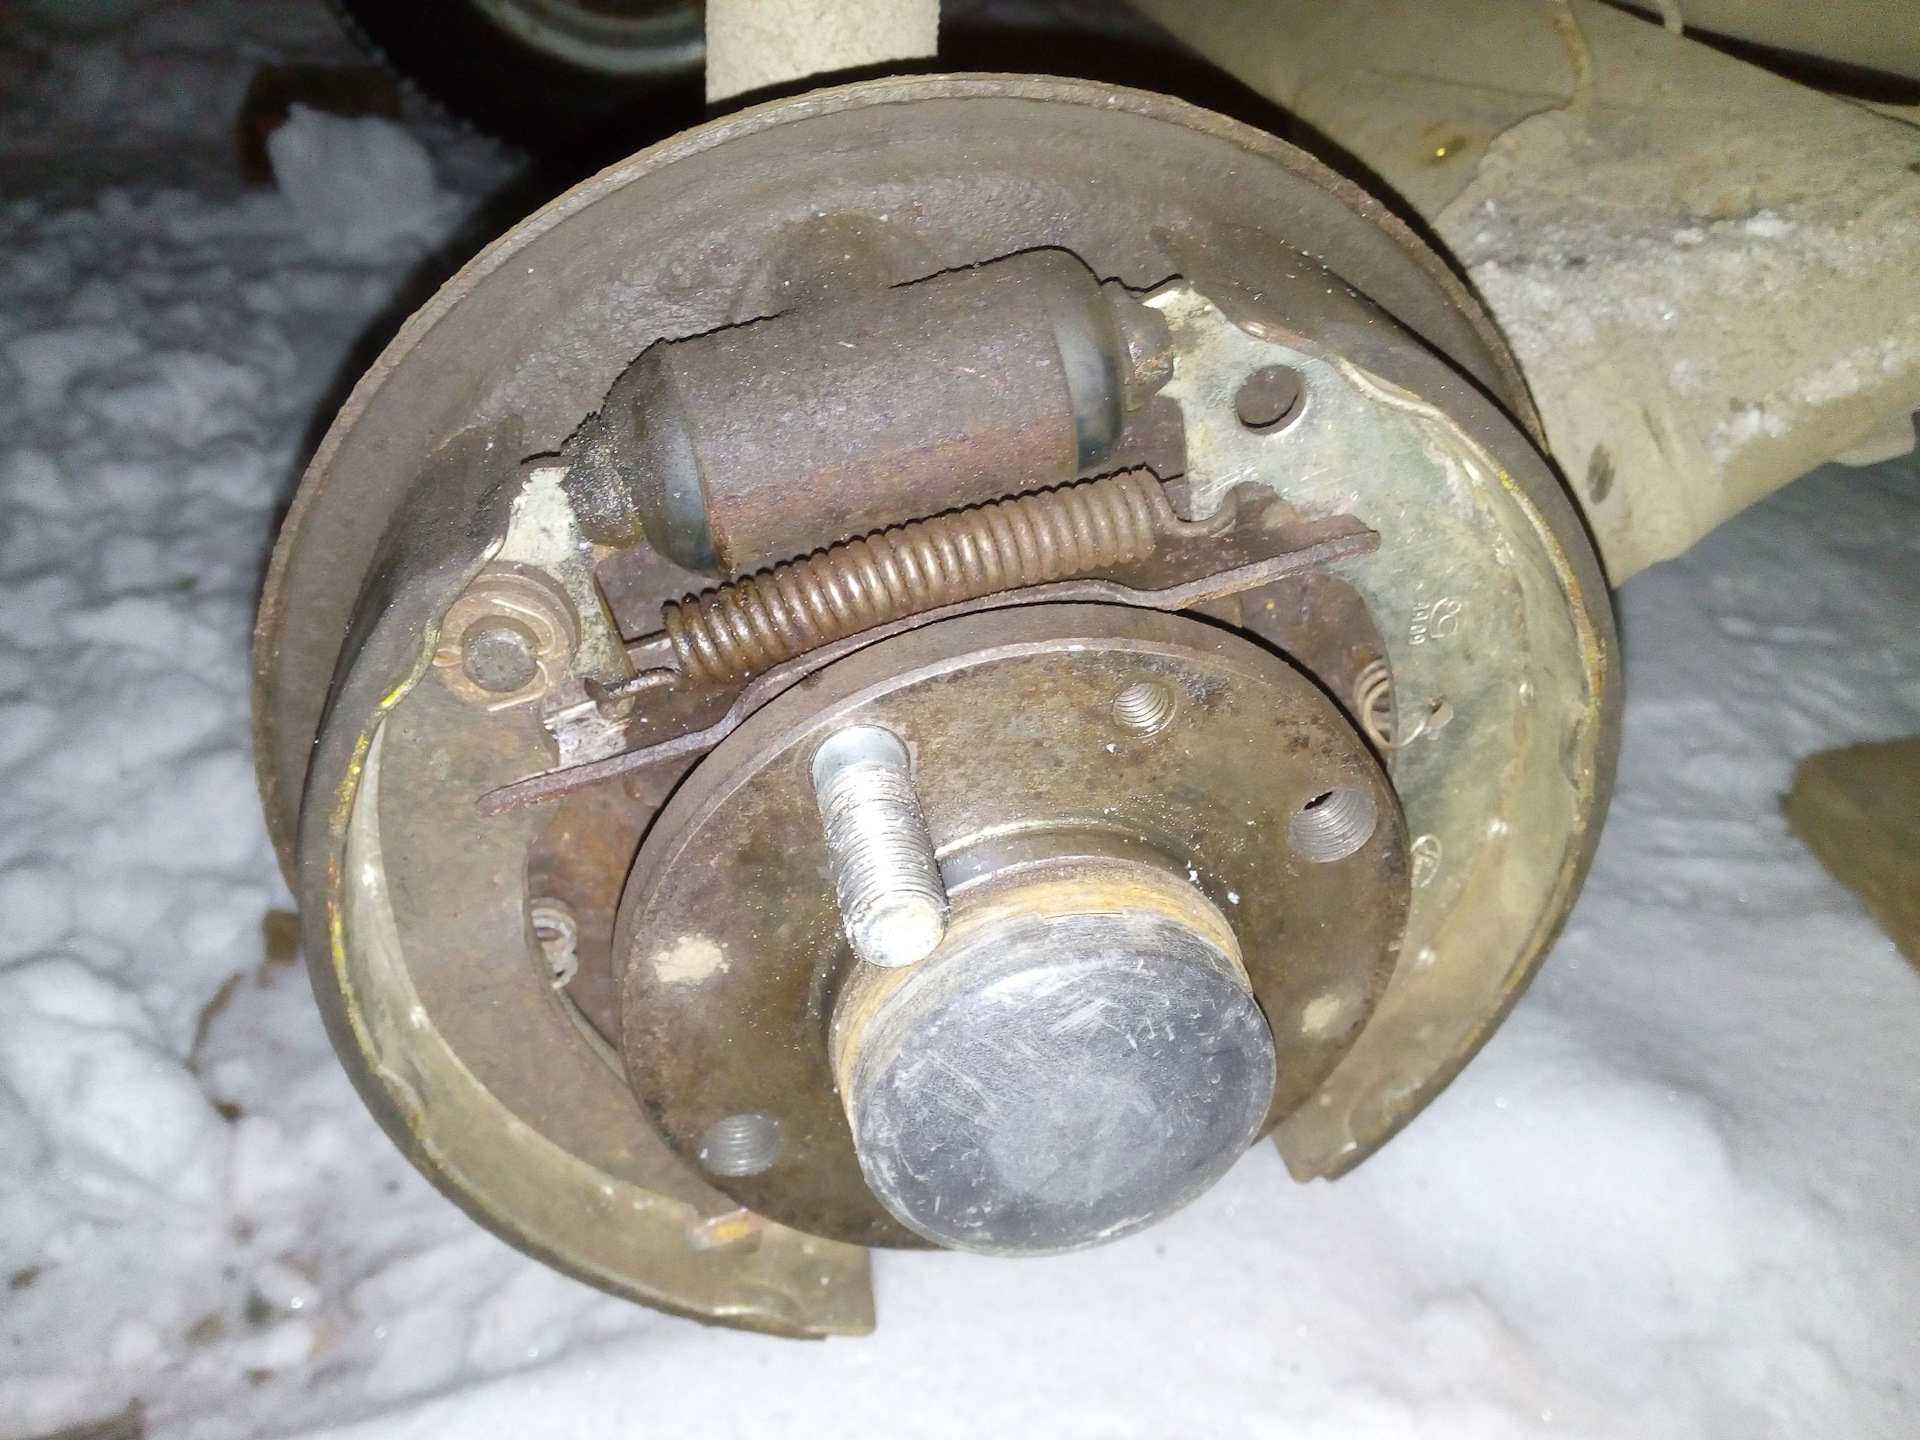 Если потек тормозной цилиндр заднего колеса автомобилей ВАЗ 2108, 2109, 21099 необходимо заменить его на новый, либо подтянуть штуцера или поменять кольца